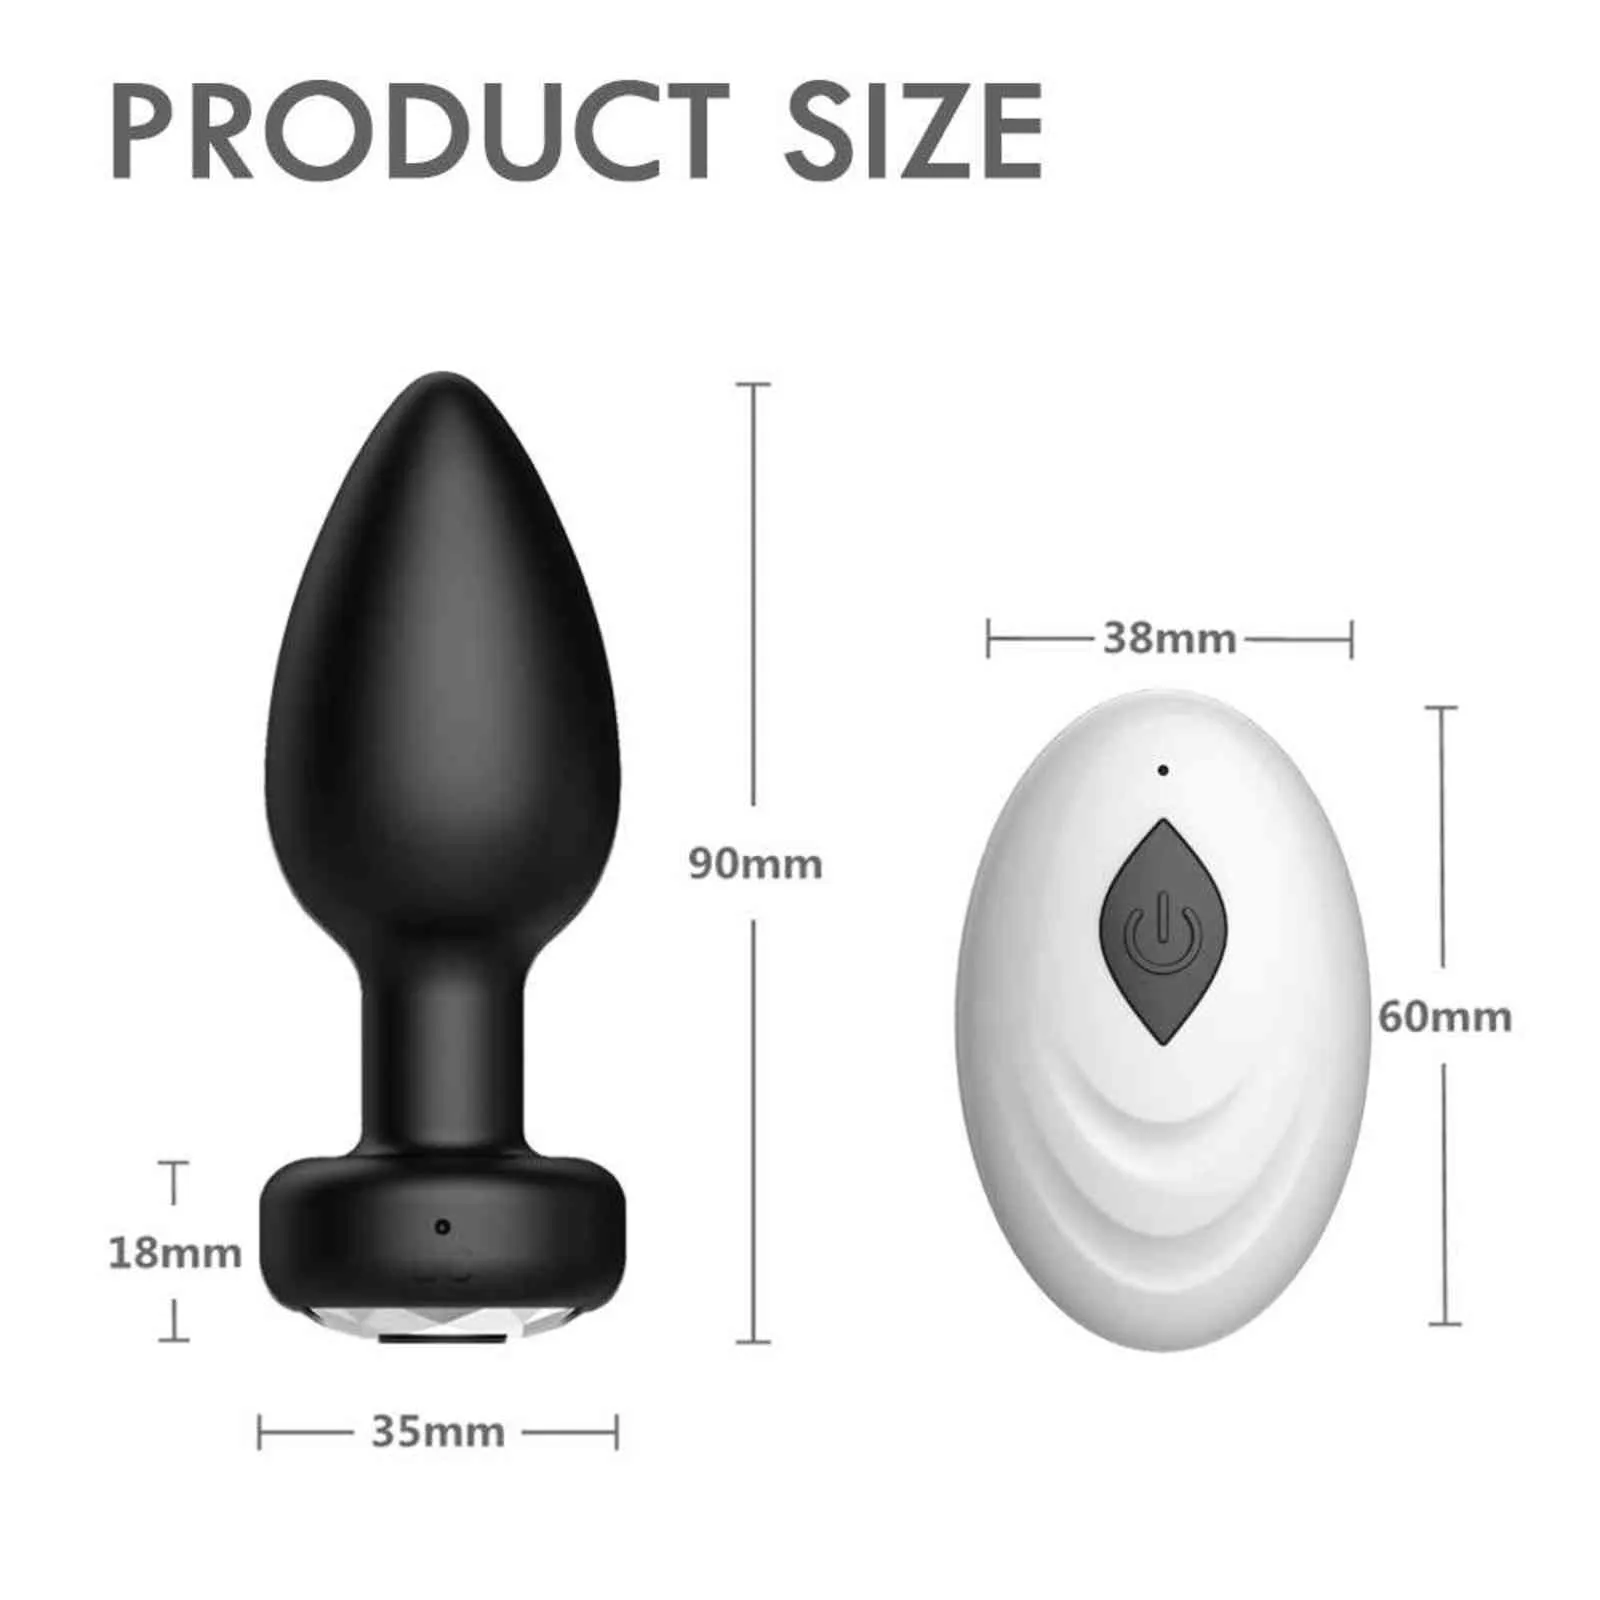 NXY Vibrators Male Prostate Massager Vibrator Anal Plug Vigina Stimulator Masturbators Romote Tail Butt Sex Toys For Men/Women Dildos 1119